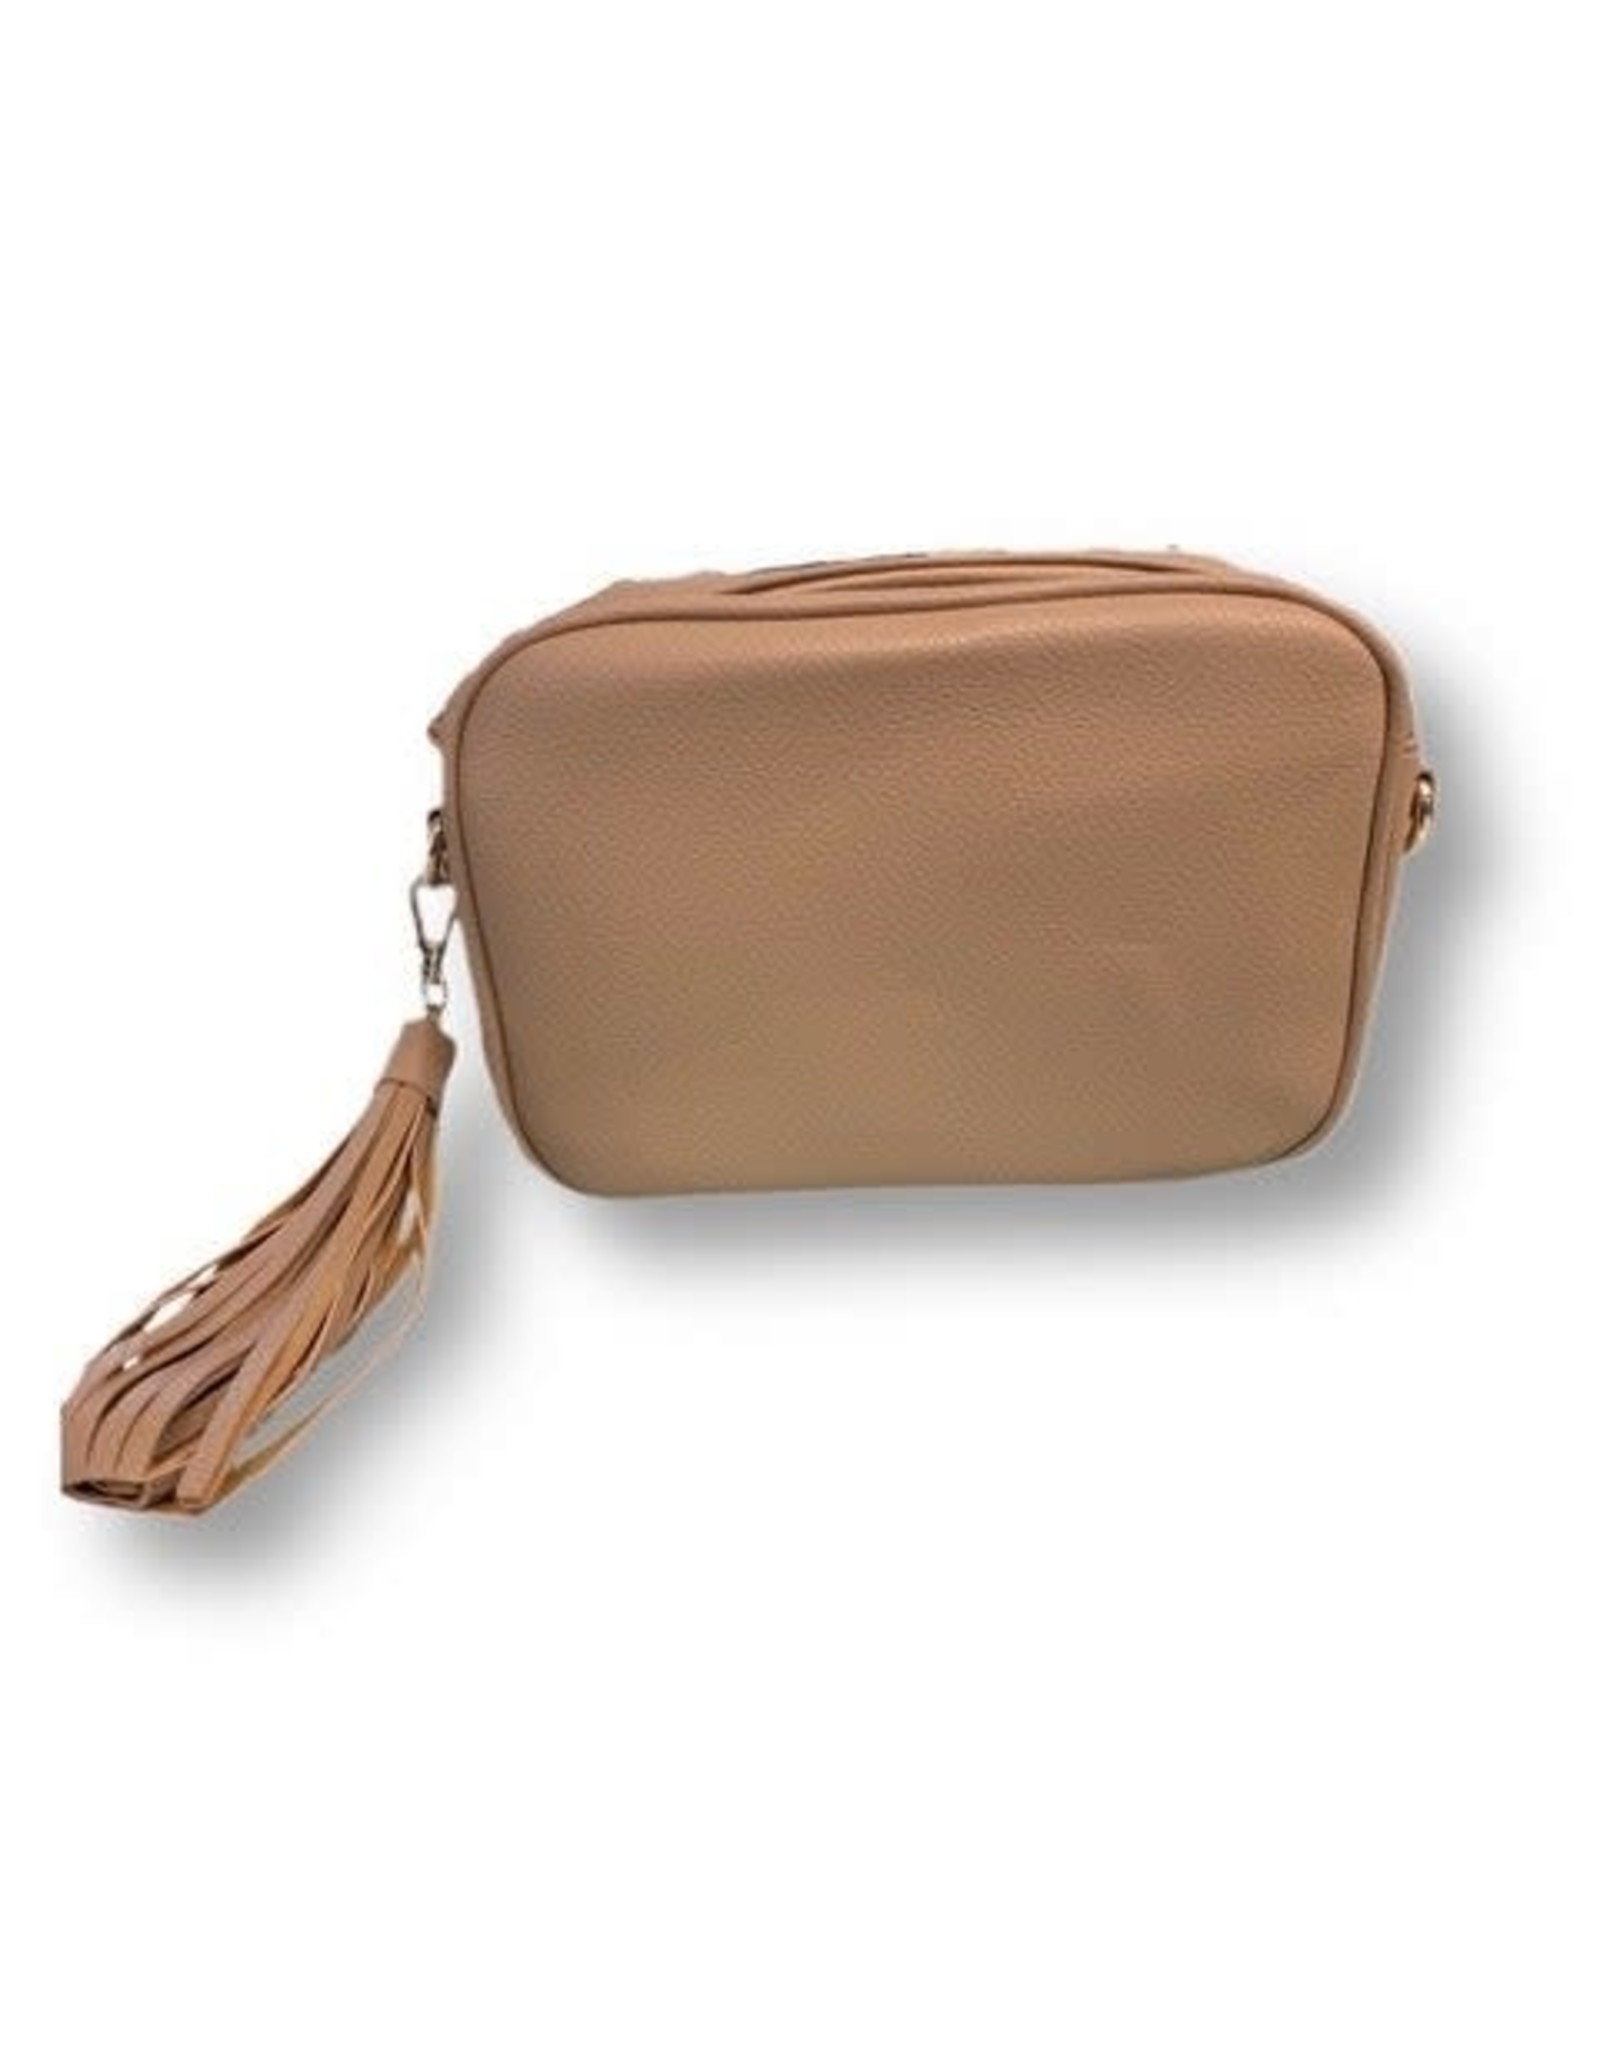 Ah-dorned Faux Leather Pebbled Tassel Bag